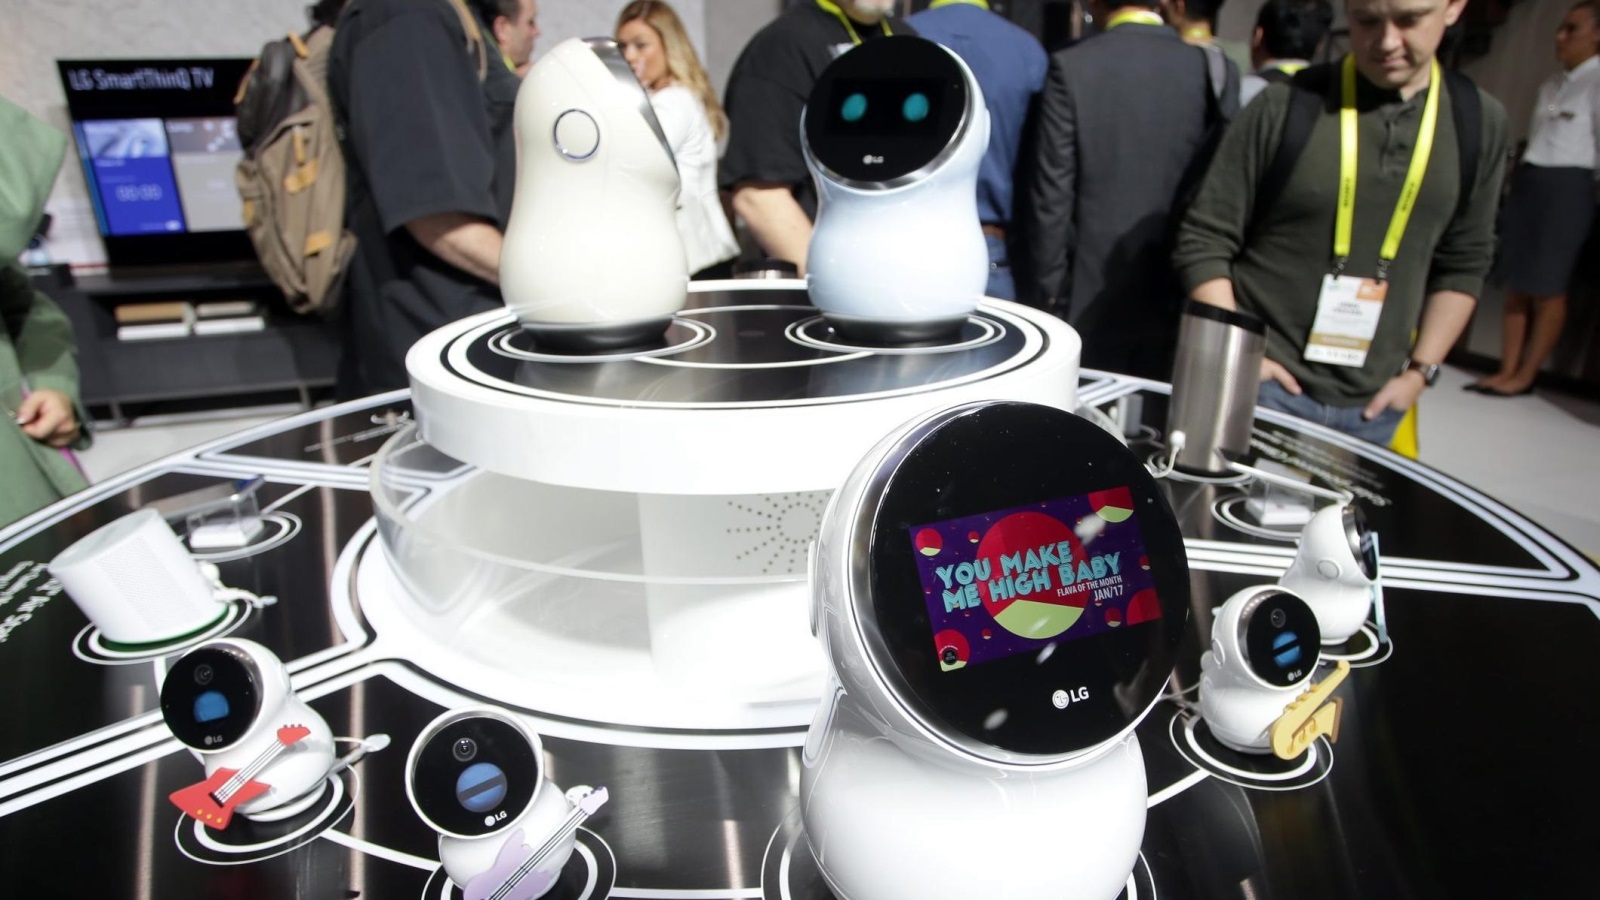 العديد من الروبوتات في المعرض استخدمت المساعد الذكي الافتراضي أليكسا لشركة أمازون (الأوروبية)